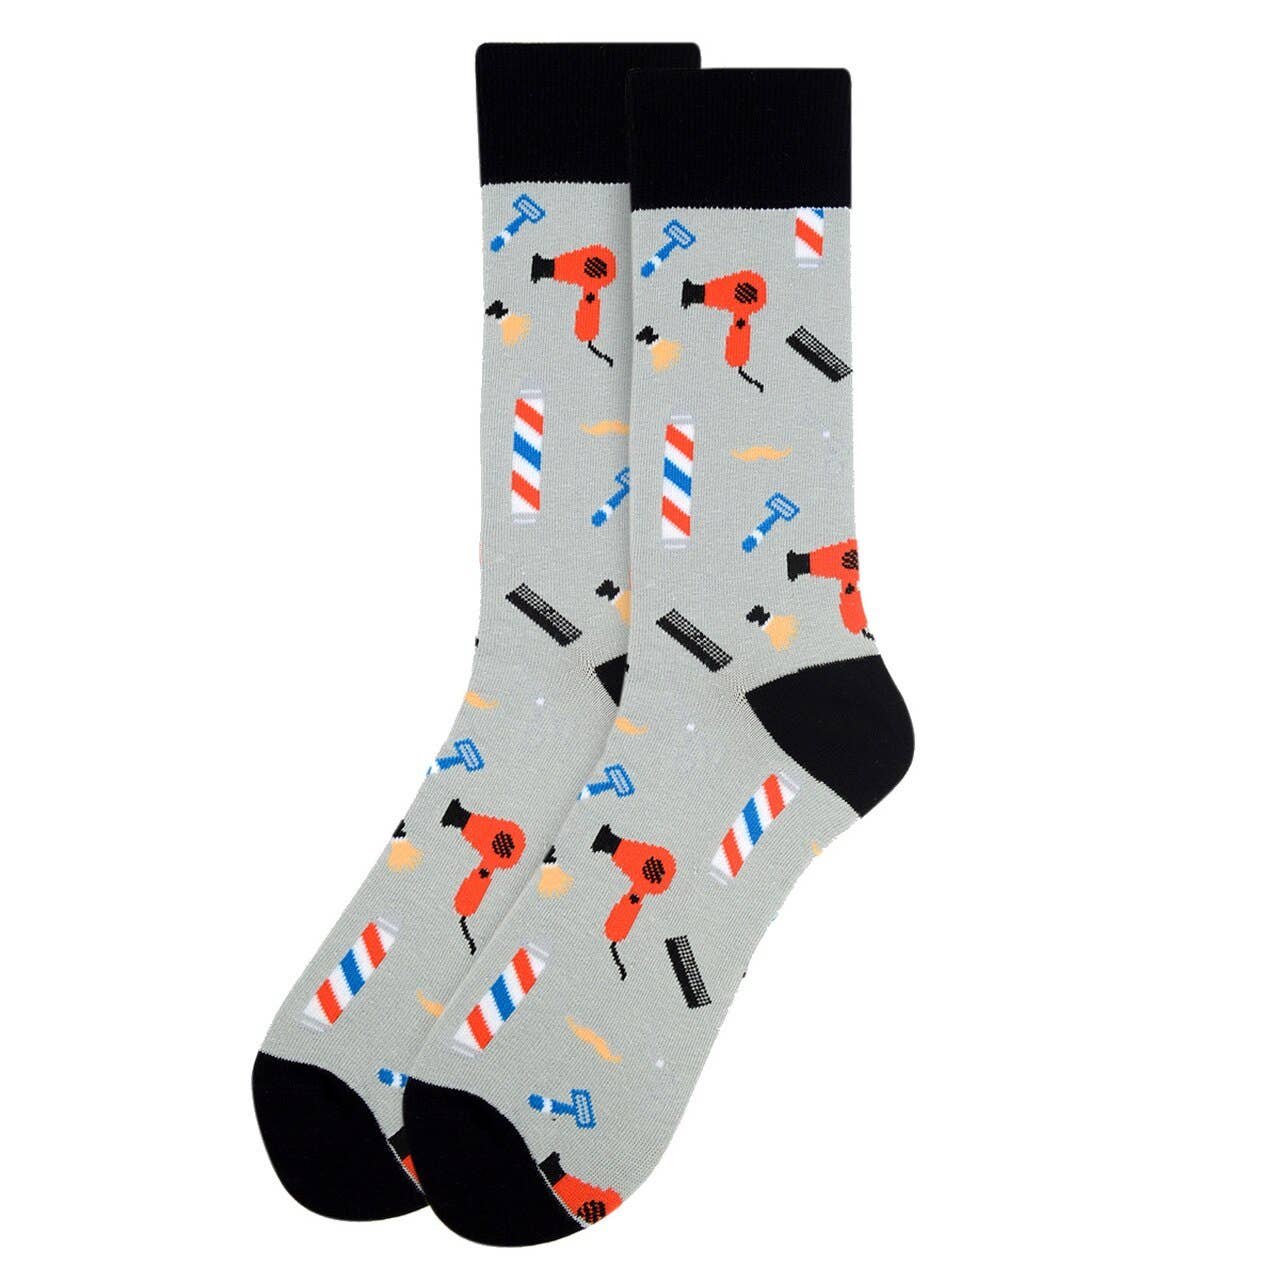 Selini New York - Barber Shop Socks for Men